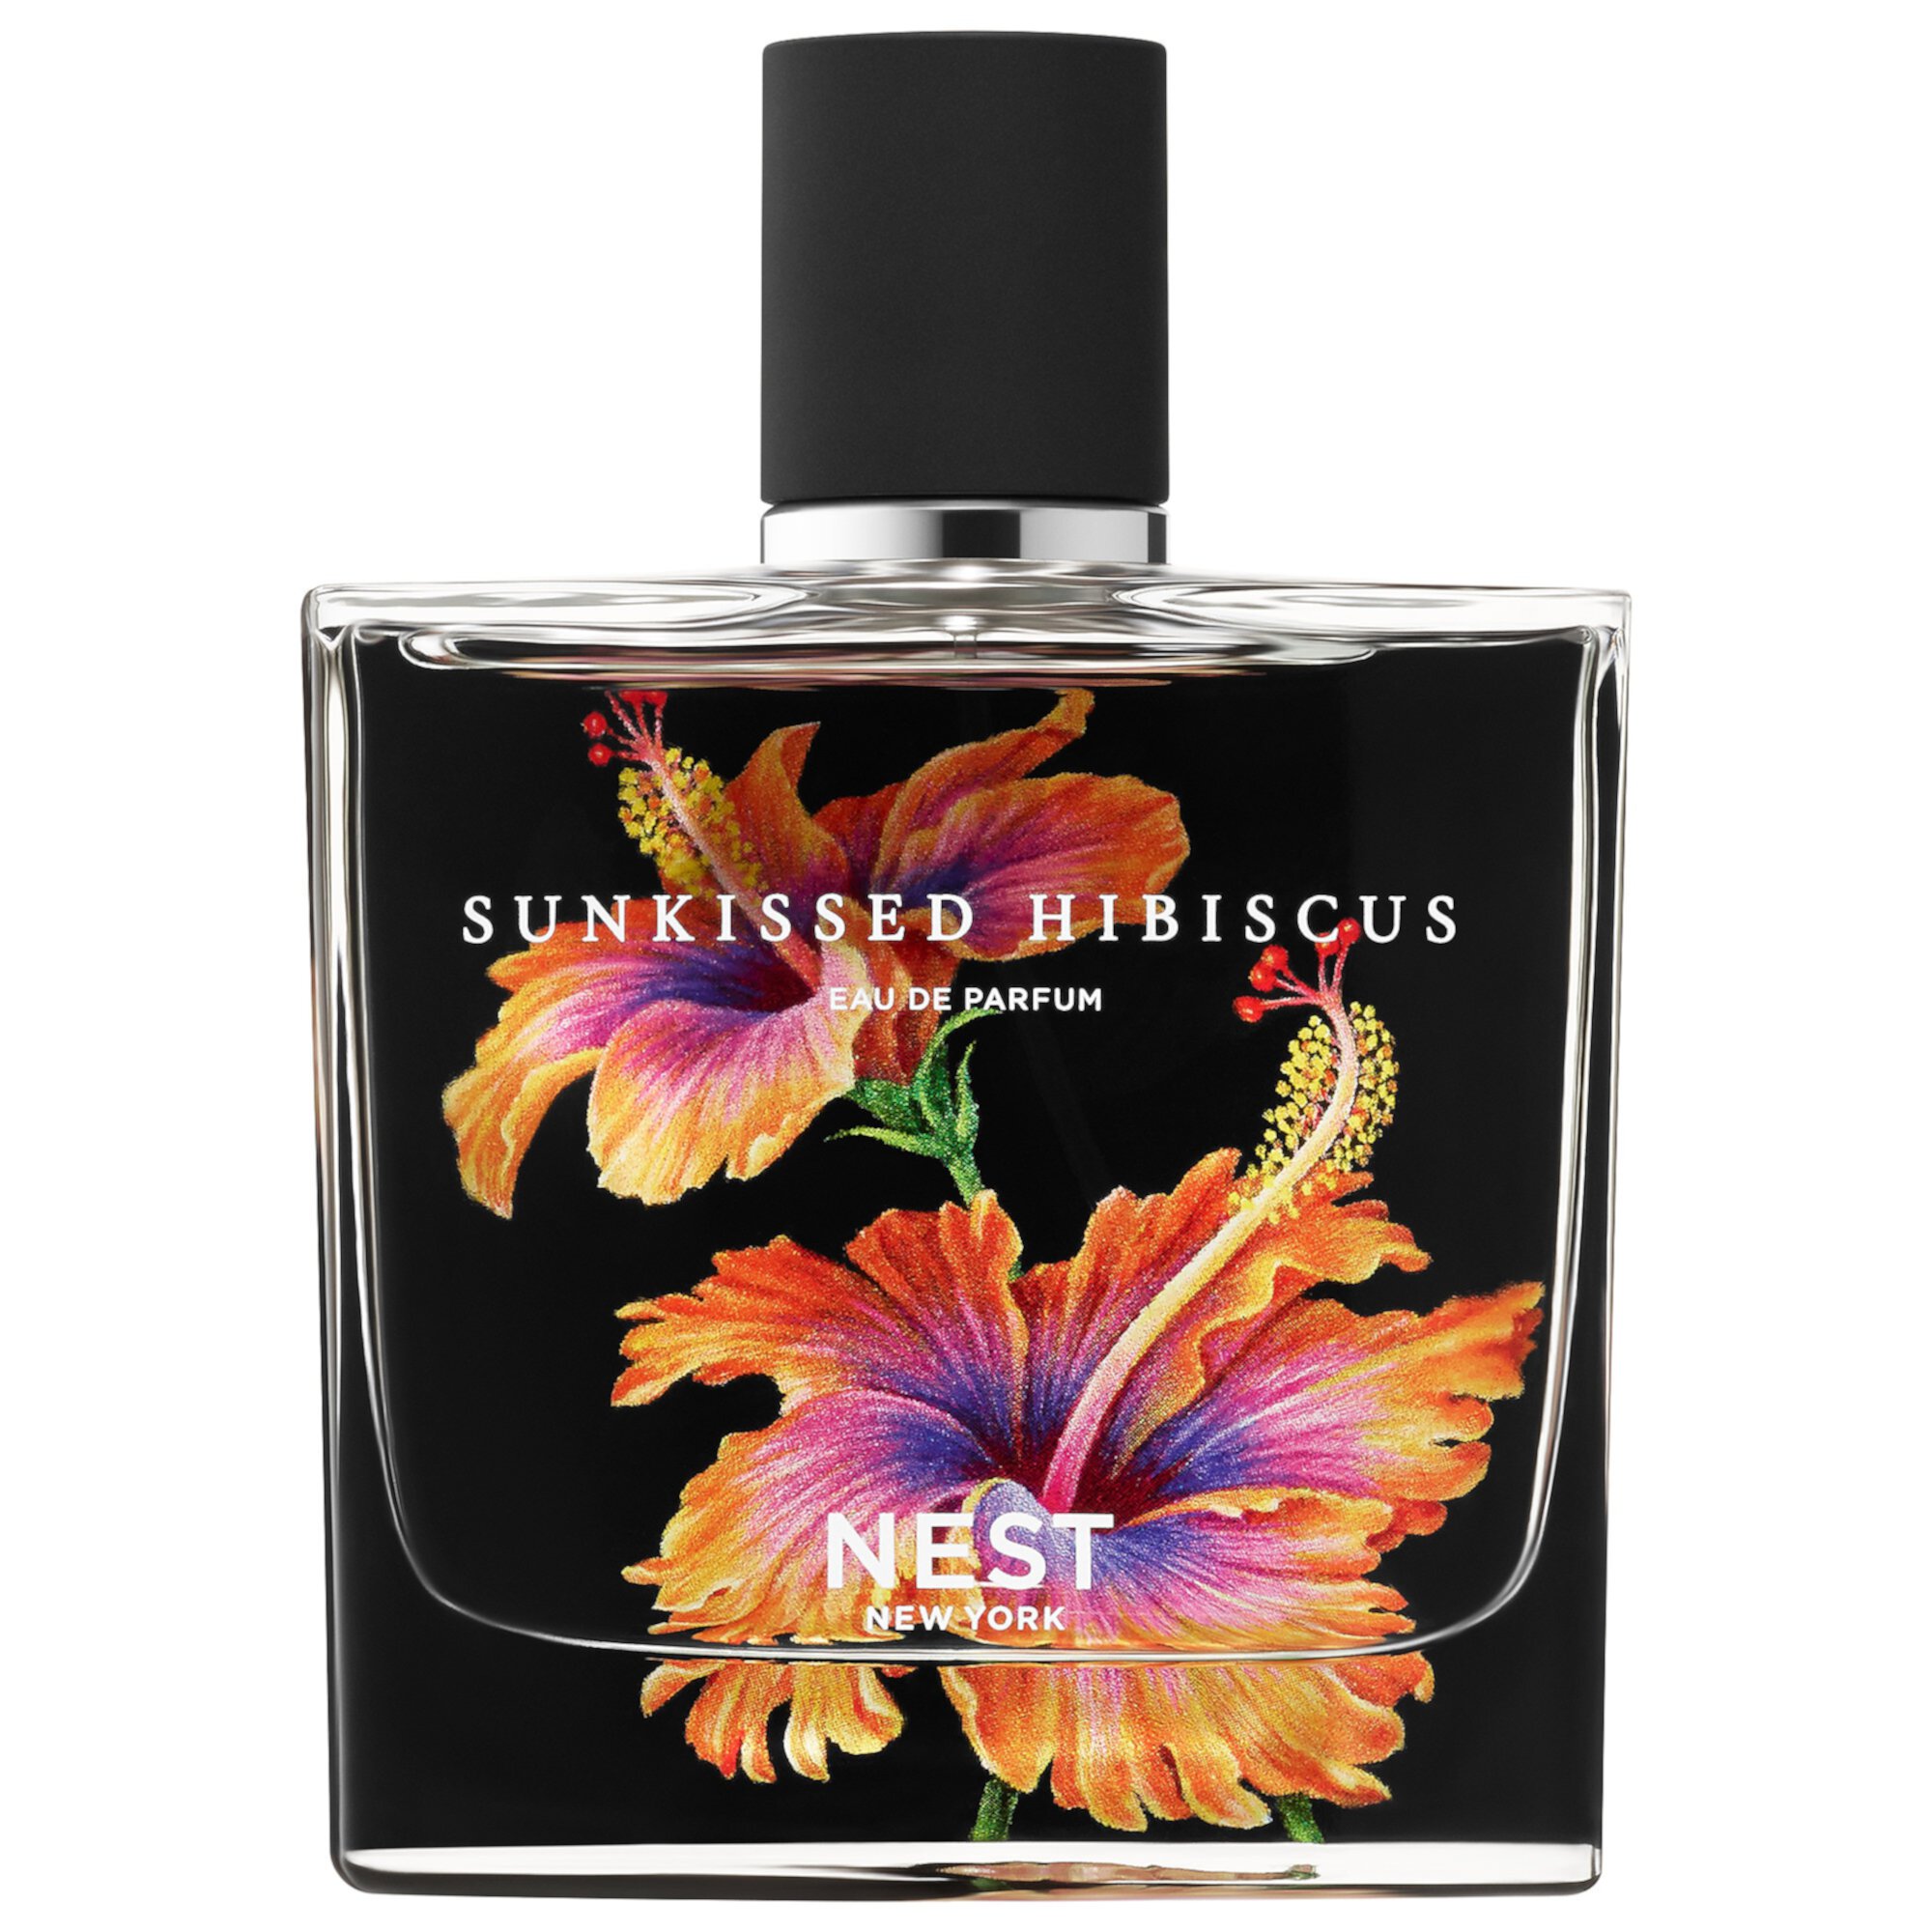 Sunkissed Hibiscus Eau de Parfum Nest New York